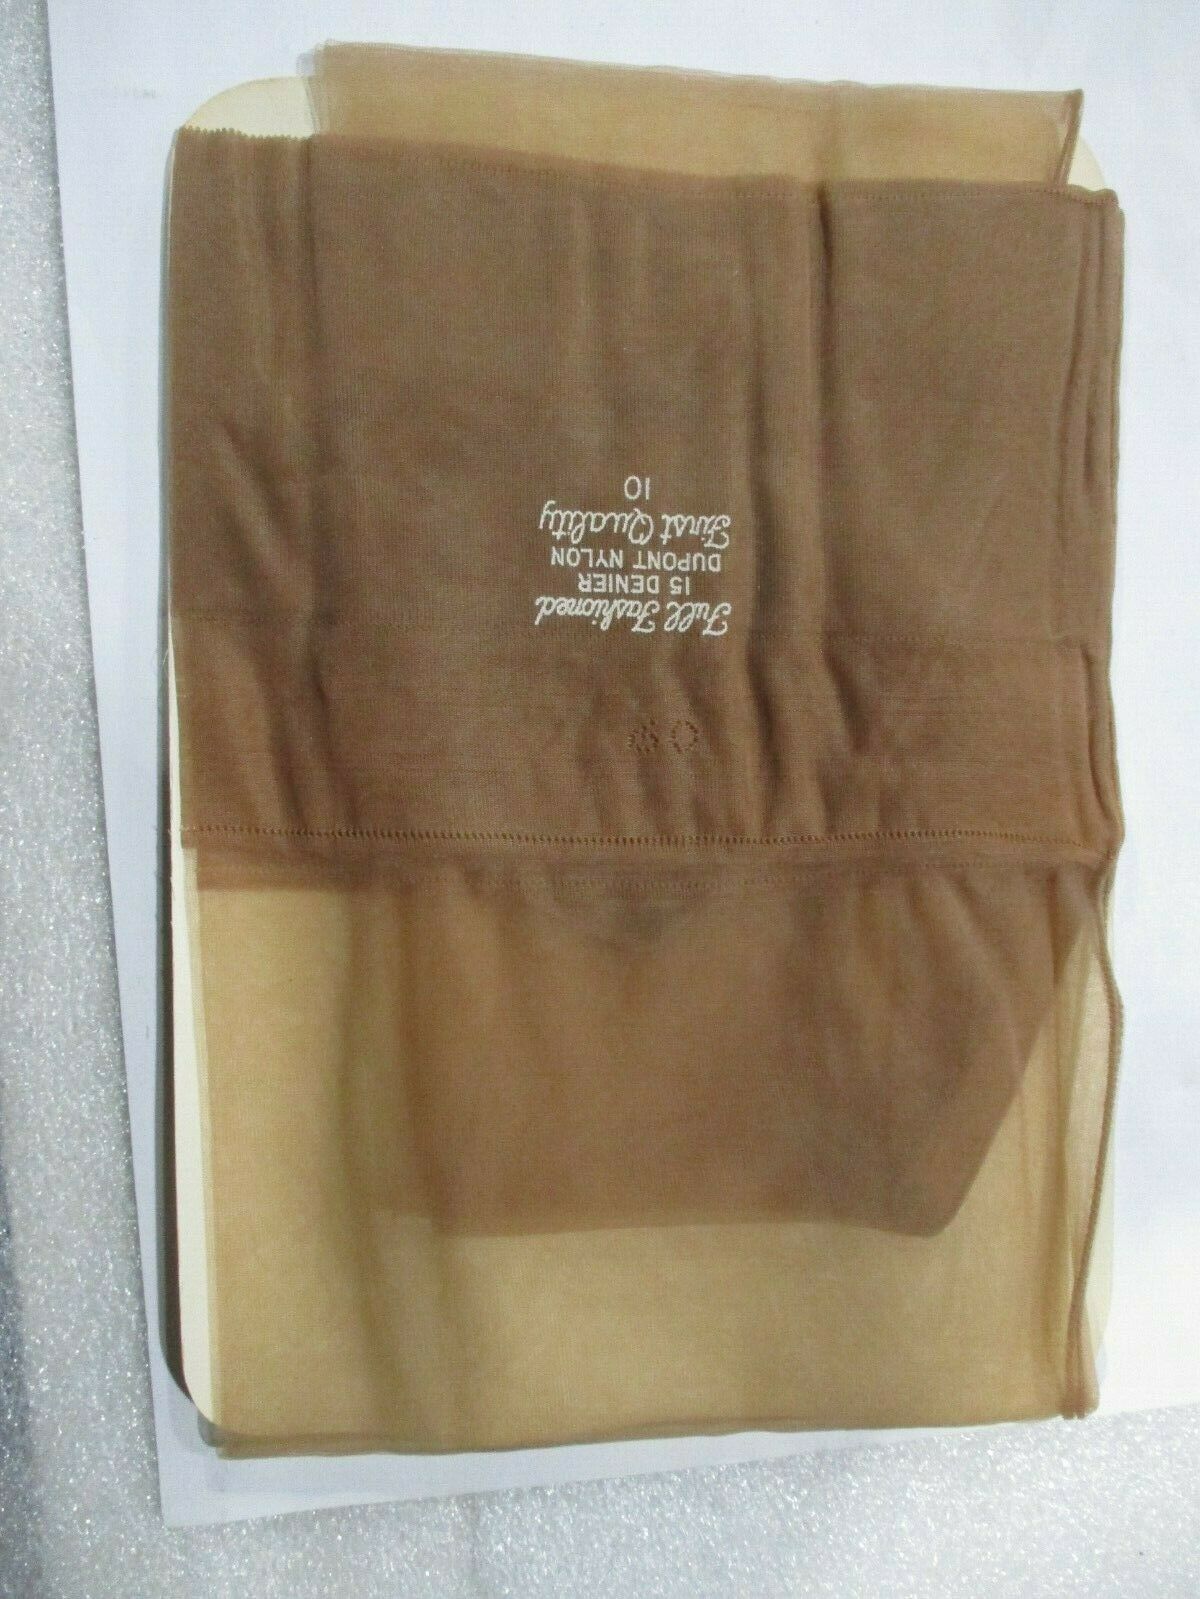 1pr Vintage Unbranded Seamed Sheer Full Fashion Nylon Stockings 10 Med Beige